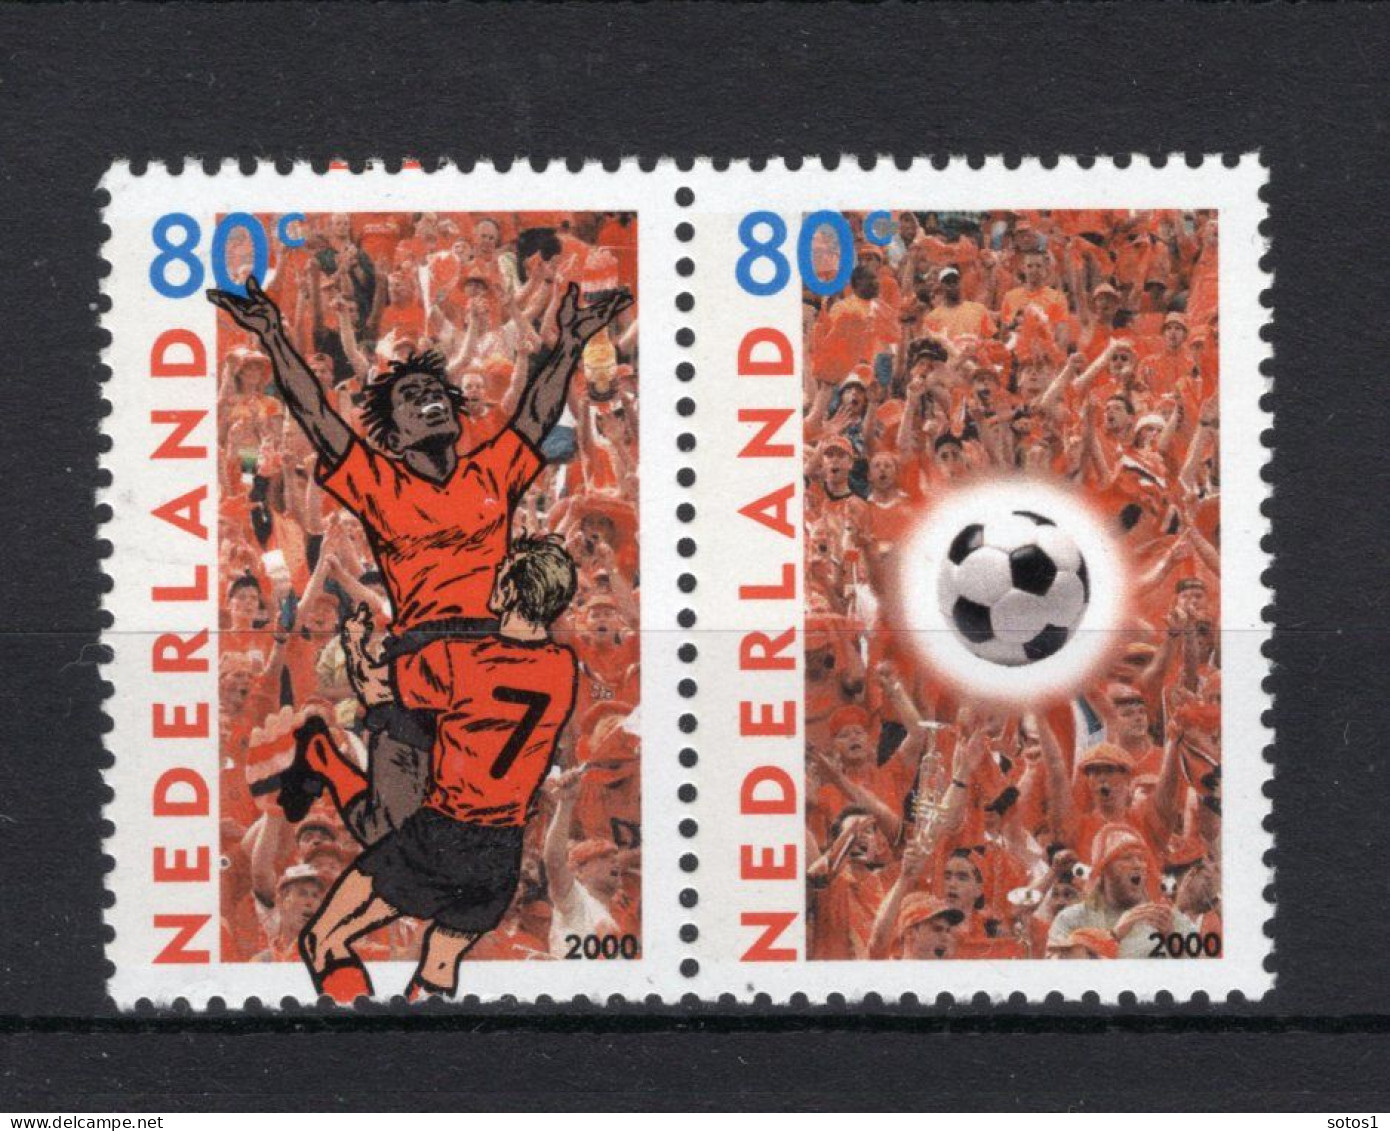 NEDERLAND 1888/1889 MNH 2000 - EK Voetbal -1 - Neufs